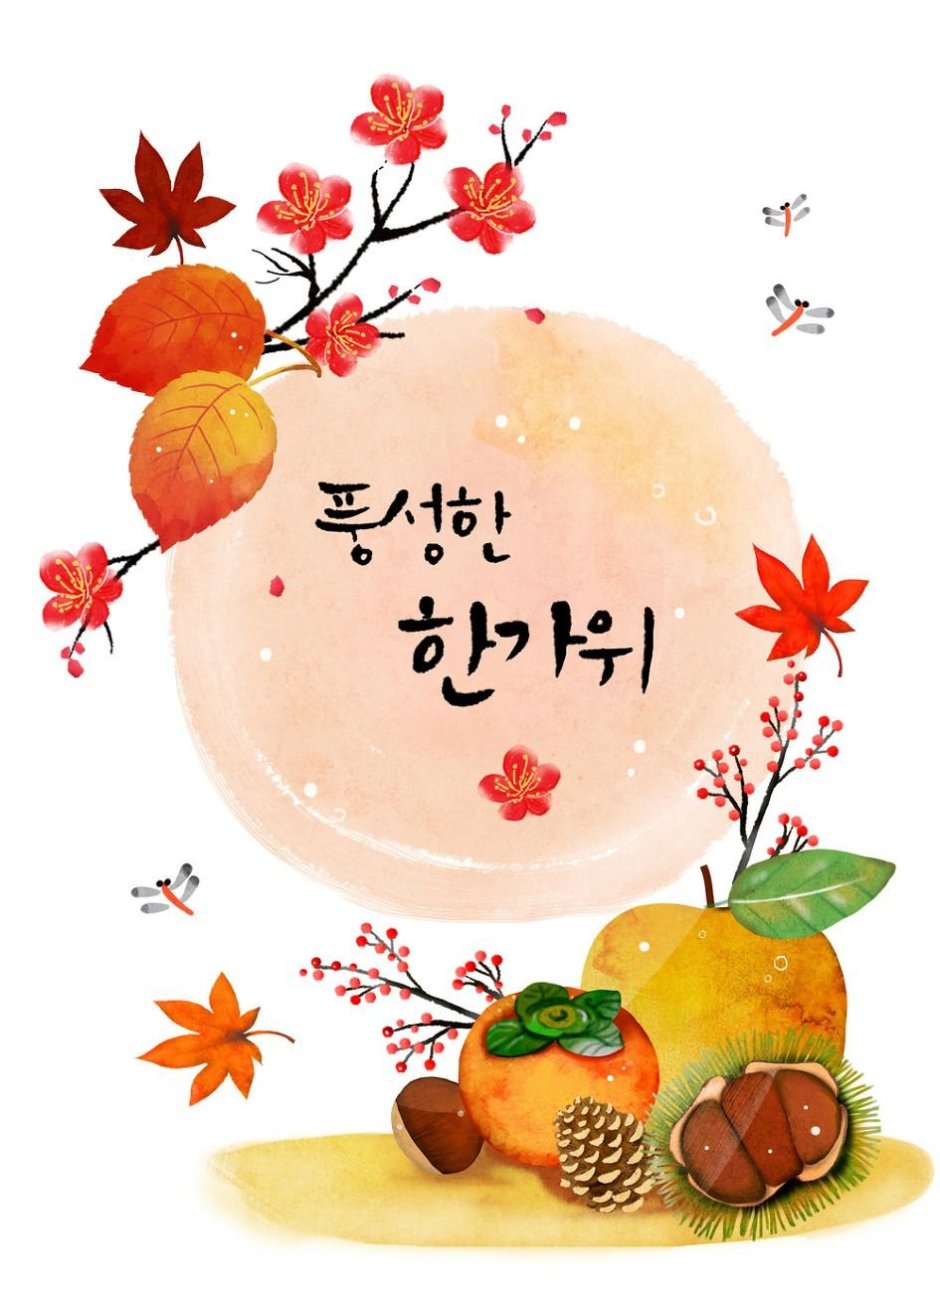 Чхусок традиционный корейский праздник